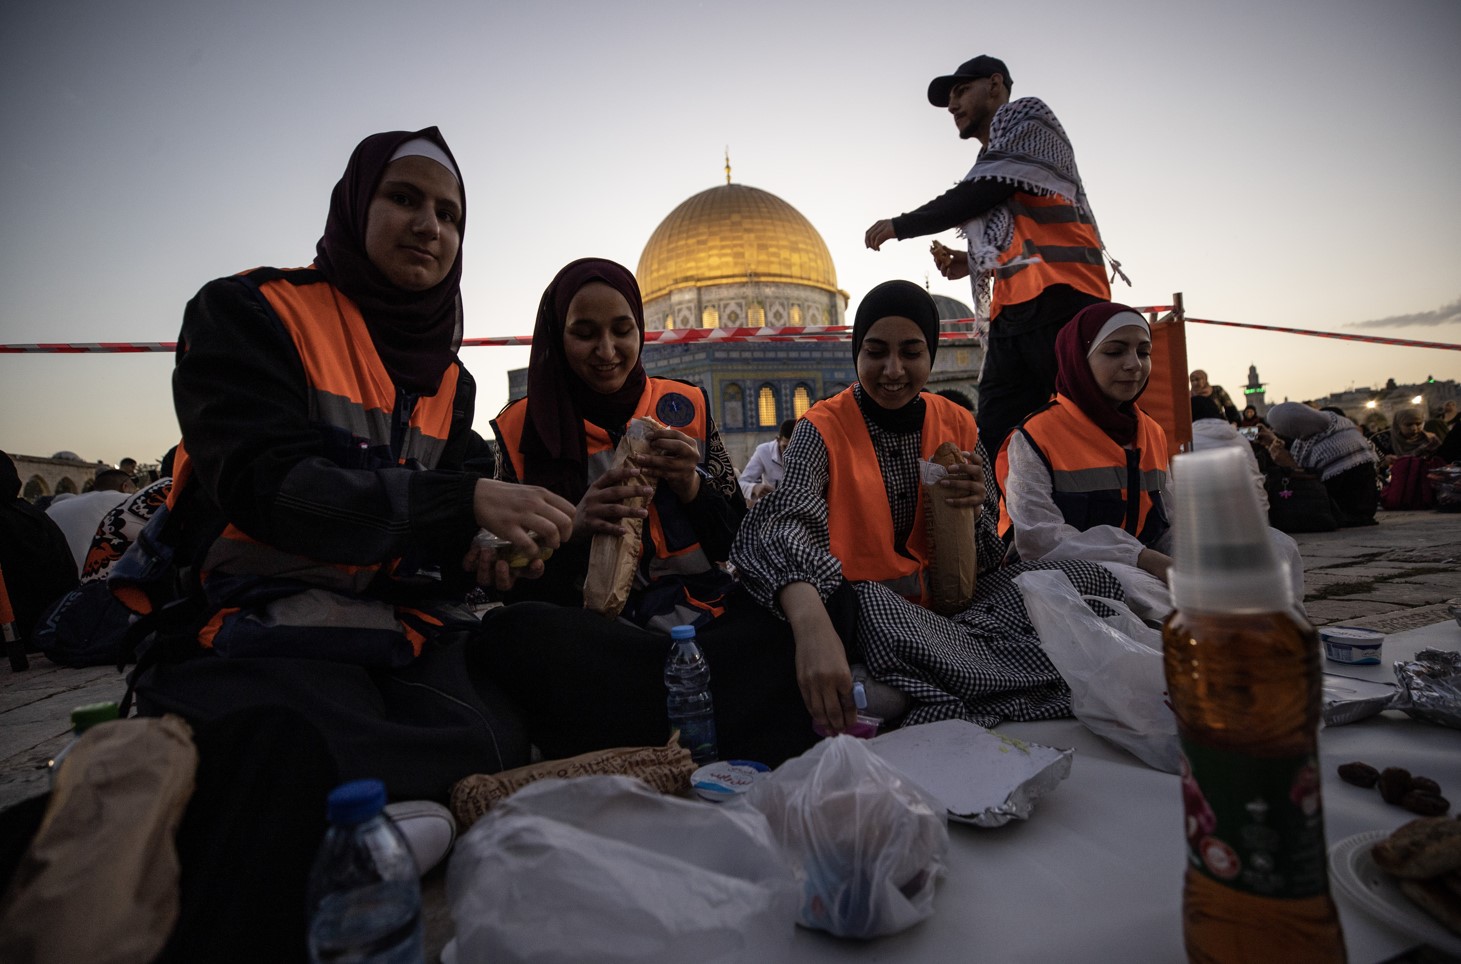 Filistin'in ve dünyanın dört bir yanından Kudüs'e gelerek Mescidi Aksa'daki geleneksel iftar sofralarında buluşan Müslümanlar, burada Ramazan günlerinin manevi ikliminin benzersiz olduğunu belirtiyor.